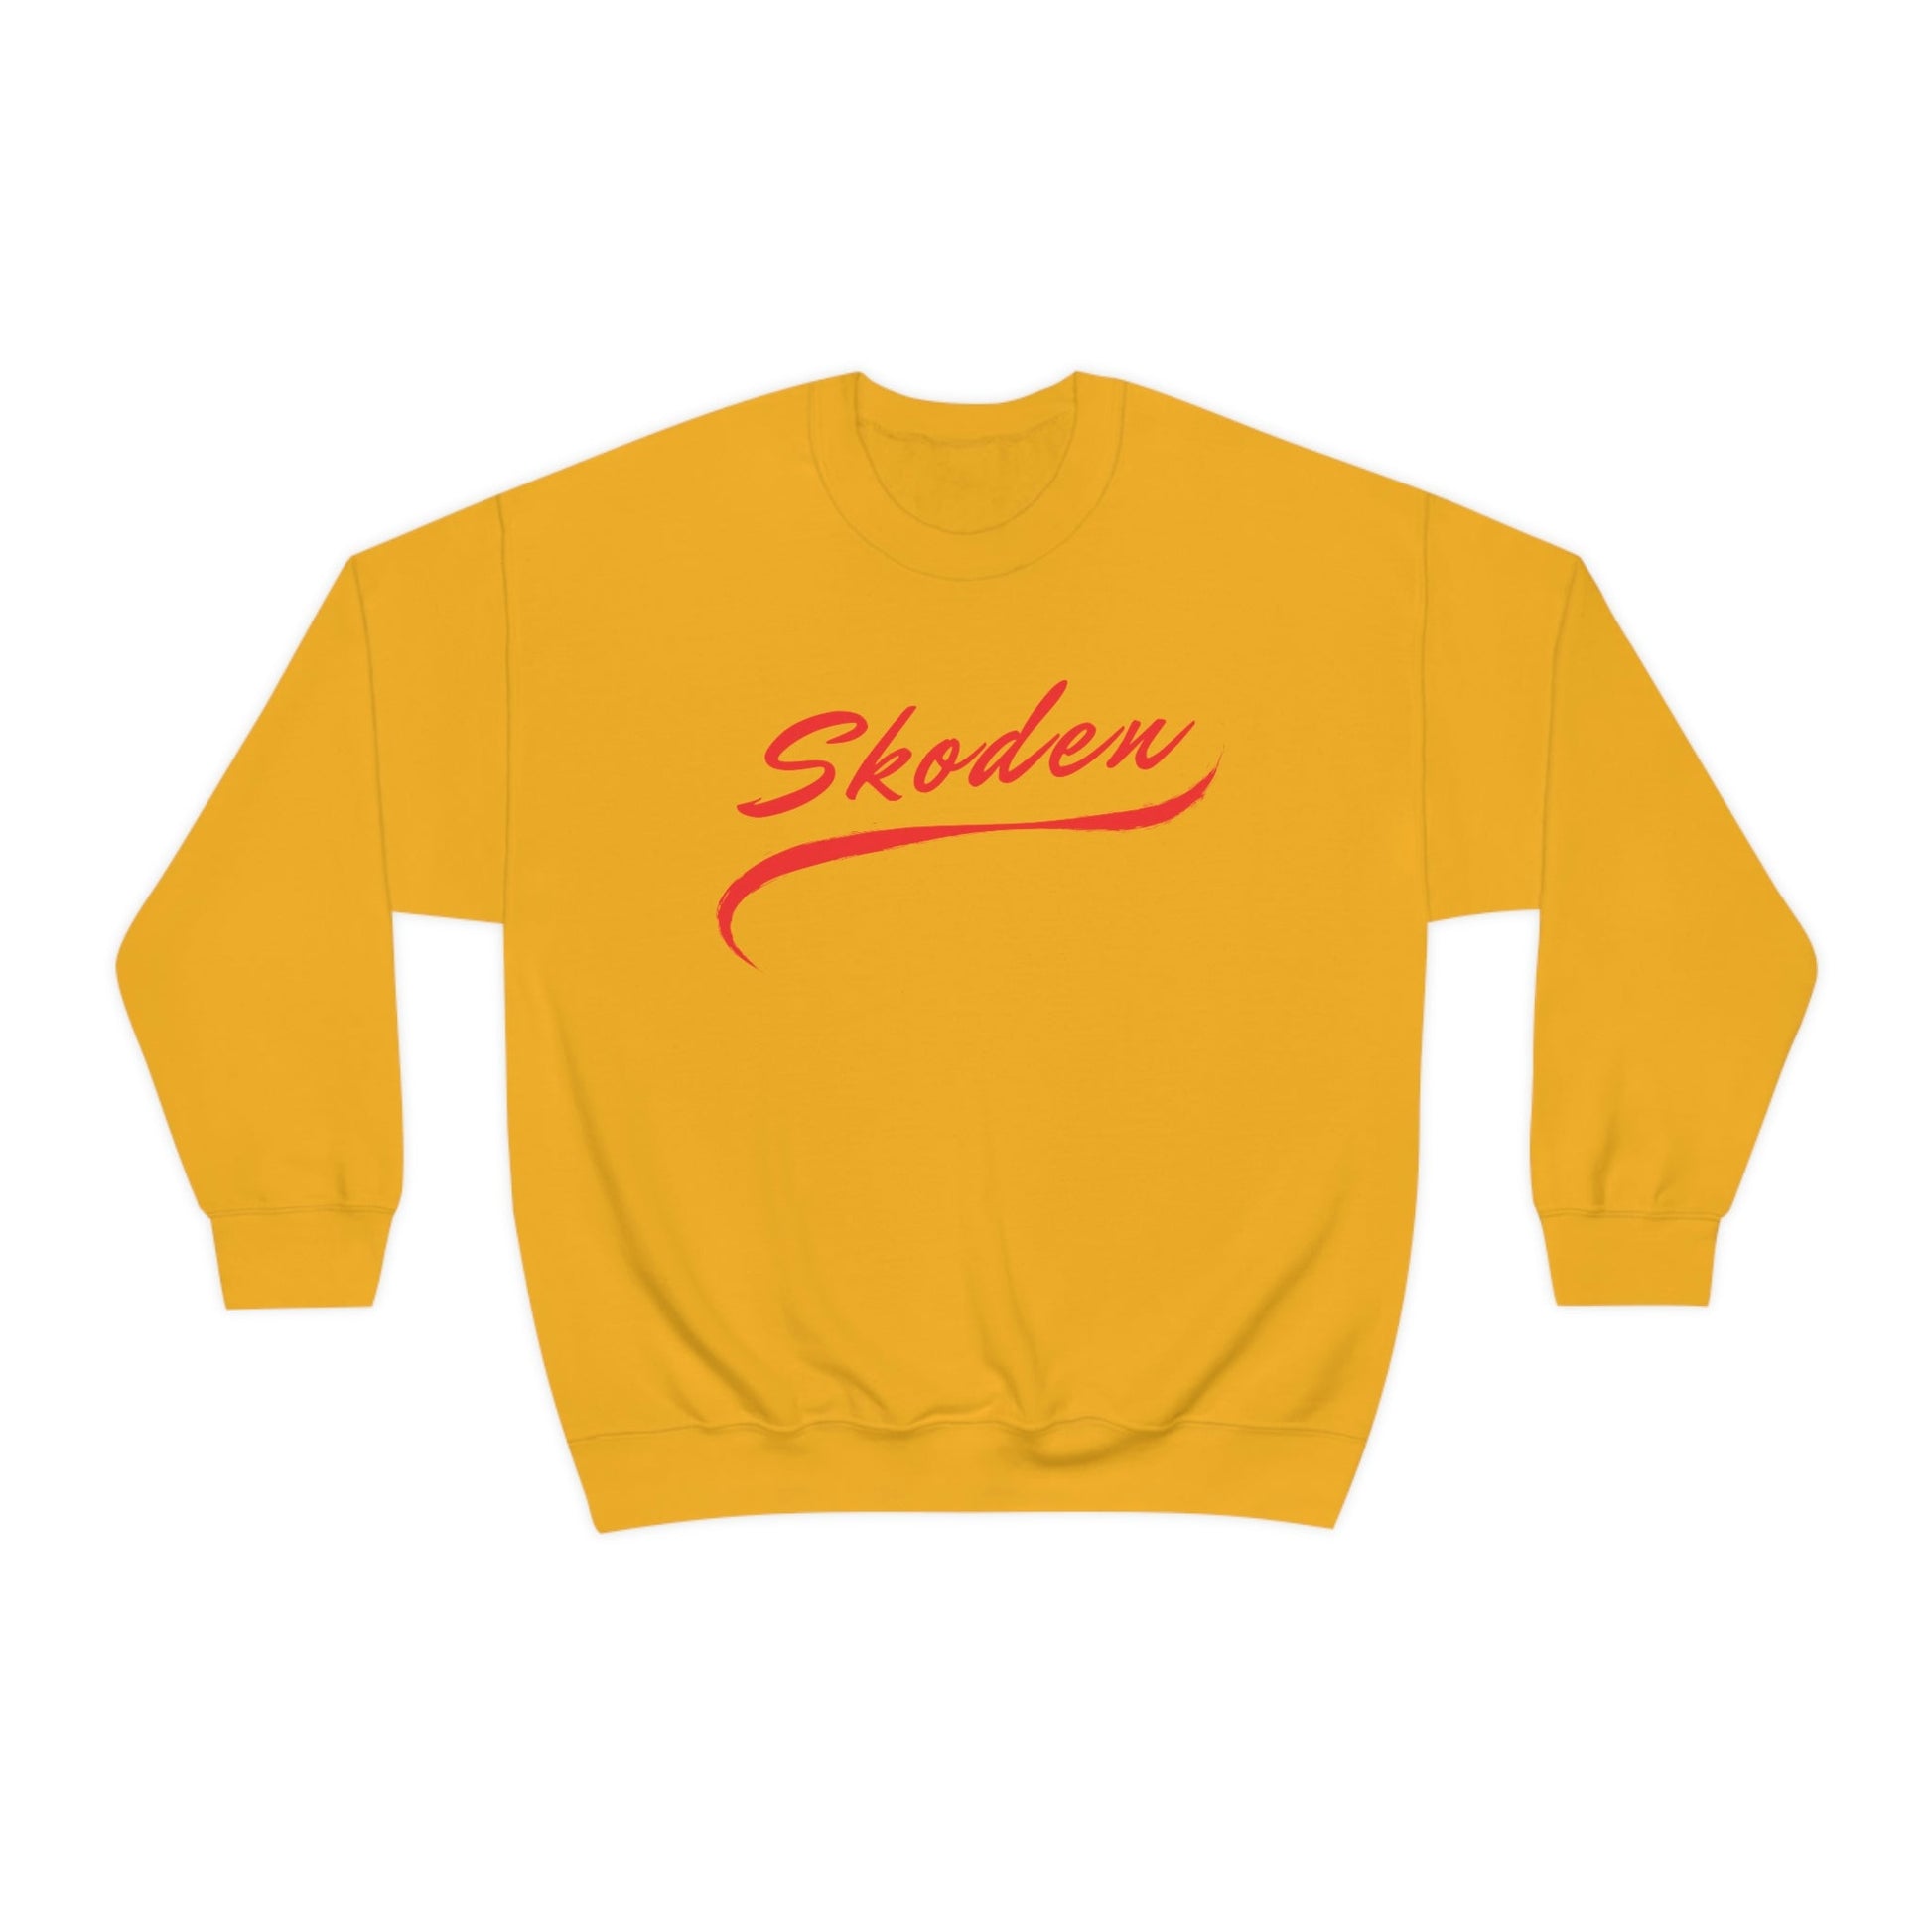 Skoden Heavy Blend Unisex Crewneck Sweatshirt - Nikikw Designs